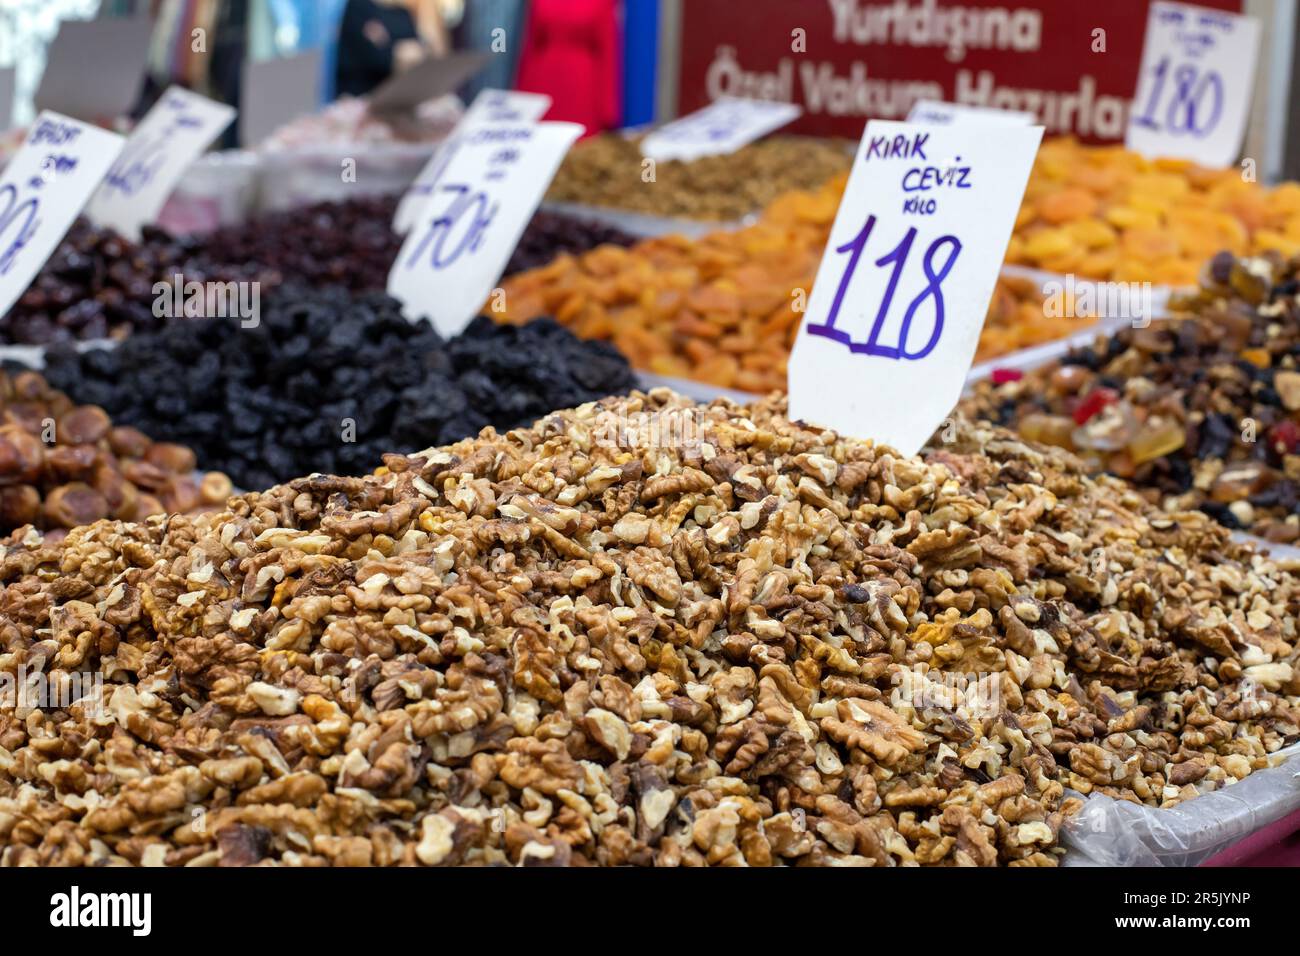 Fruits secs et noix sur un marché alimentaire local à Izmir, en Turquie. Tas de noix ouvertes sur un marché. Banque D'Images